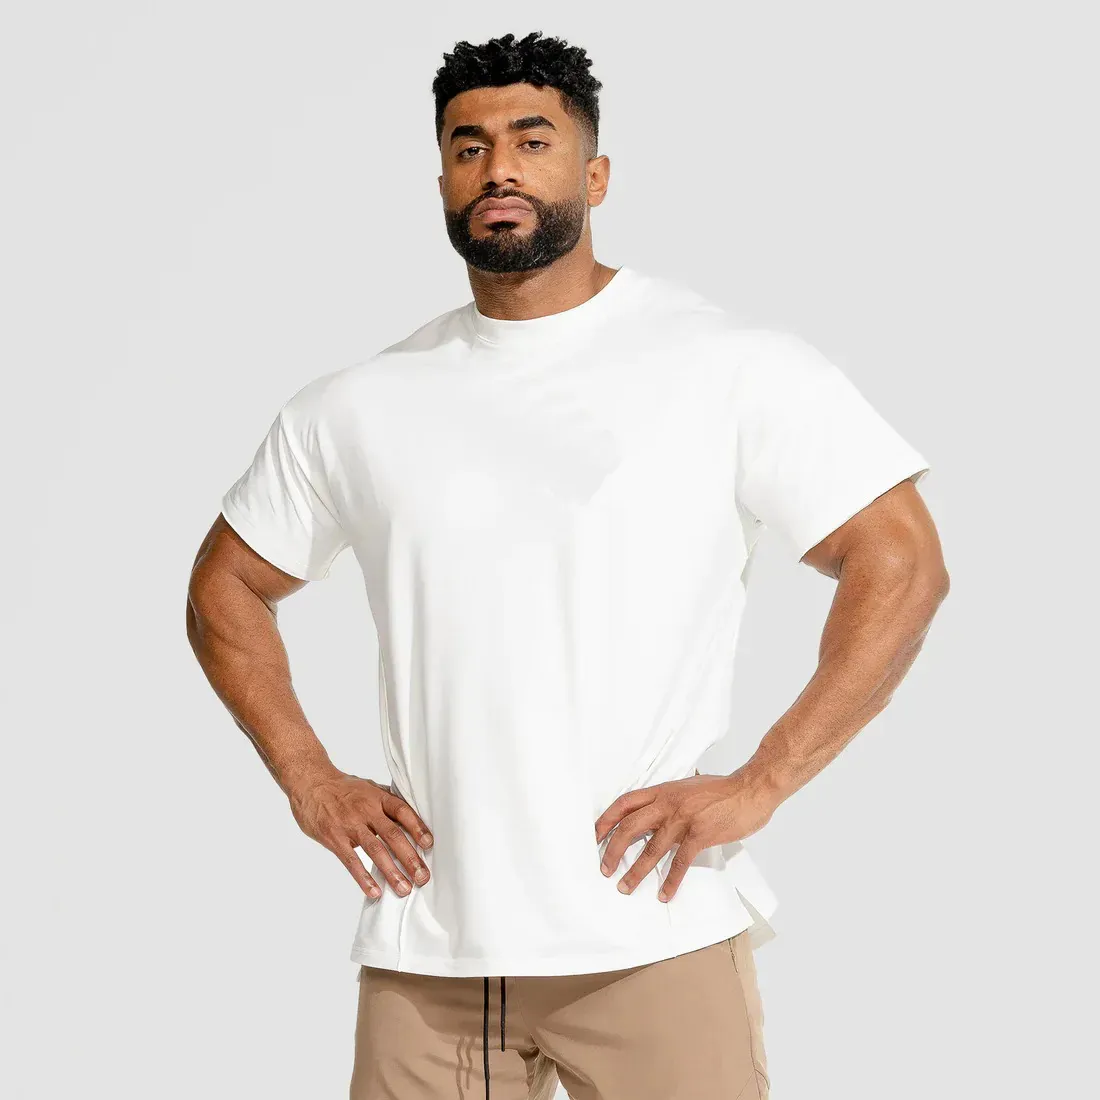 100% 면 남자 체육관 T 셔츠 피트니스 런닝웨어 셔츠 압축 체육관 착용 남자 반소매 T 셔츠